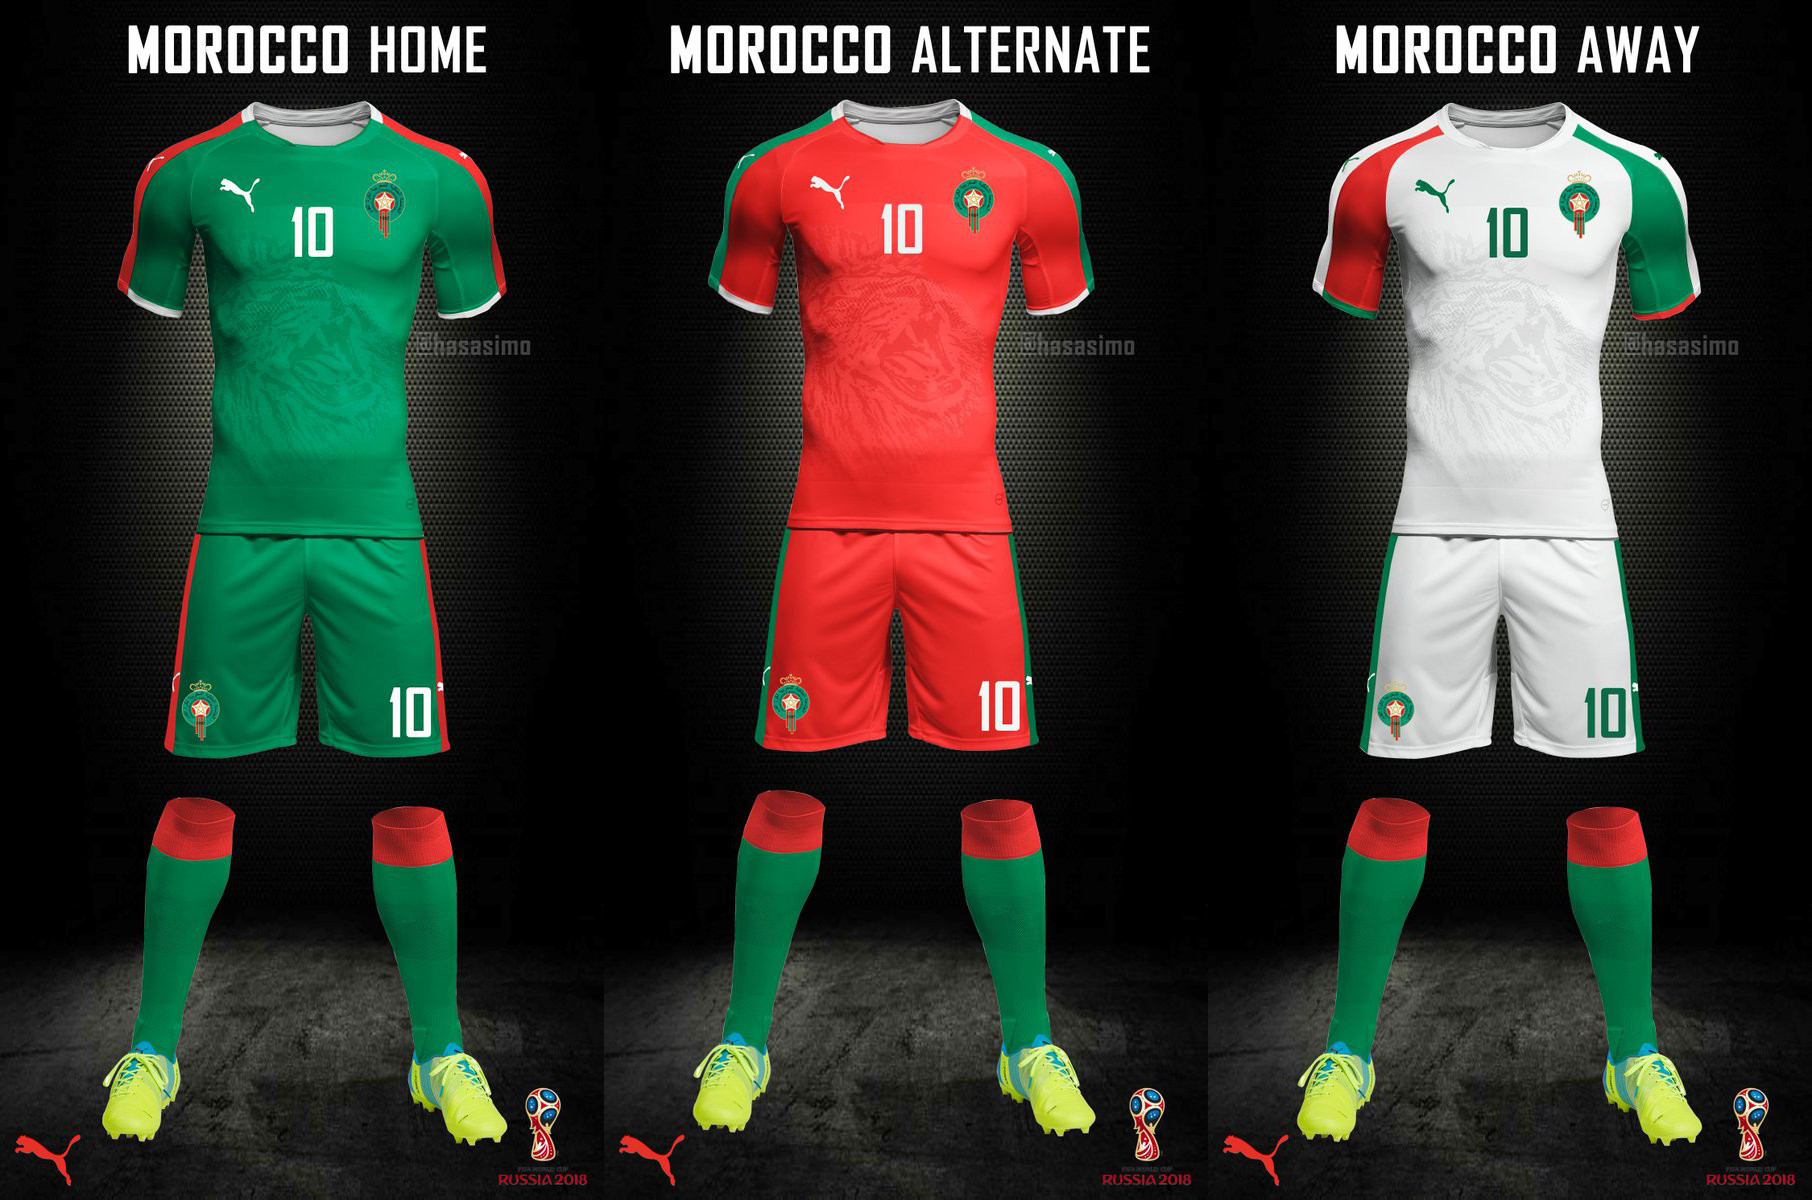 Voldoen nek ontspannen Marokkanen druk bezig met ontwerp nieuwe WK-shirt Atlas Leeuwen (foto's)